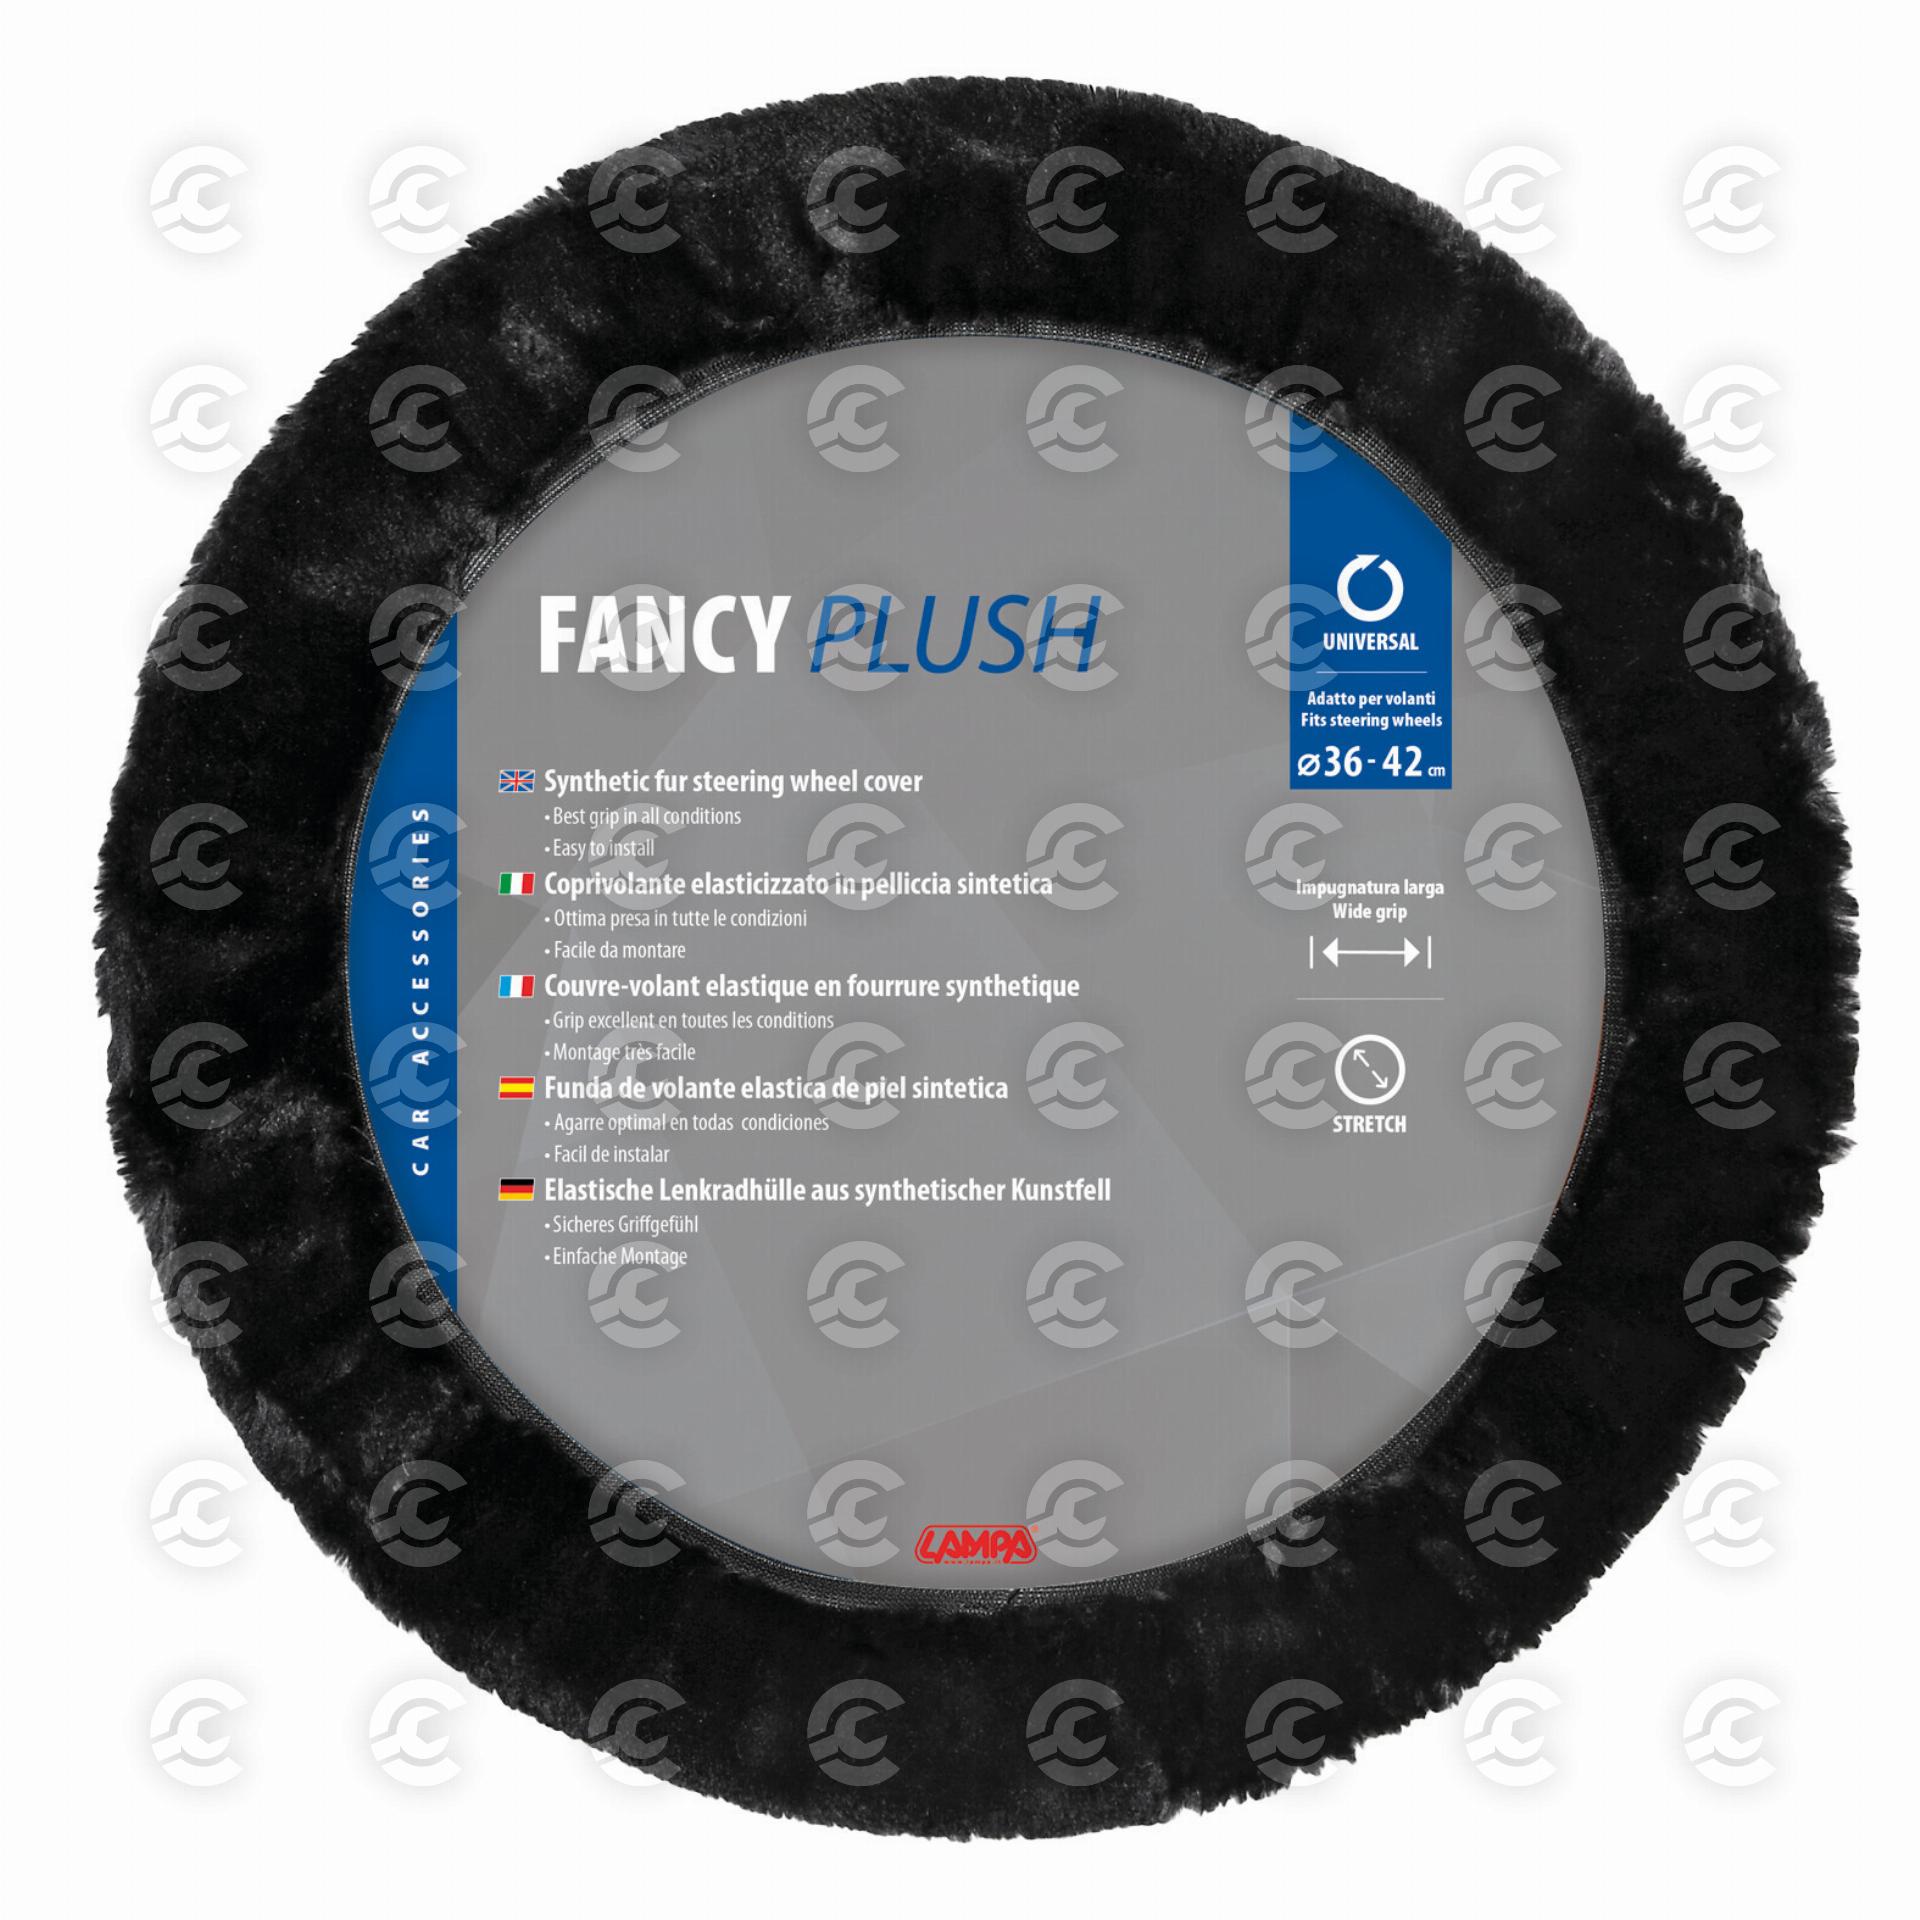 Fancy Plush, coprivolante elasticizzato in pelliccia sintetica - Ø 36-42 cm - Nero